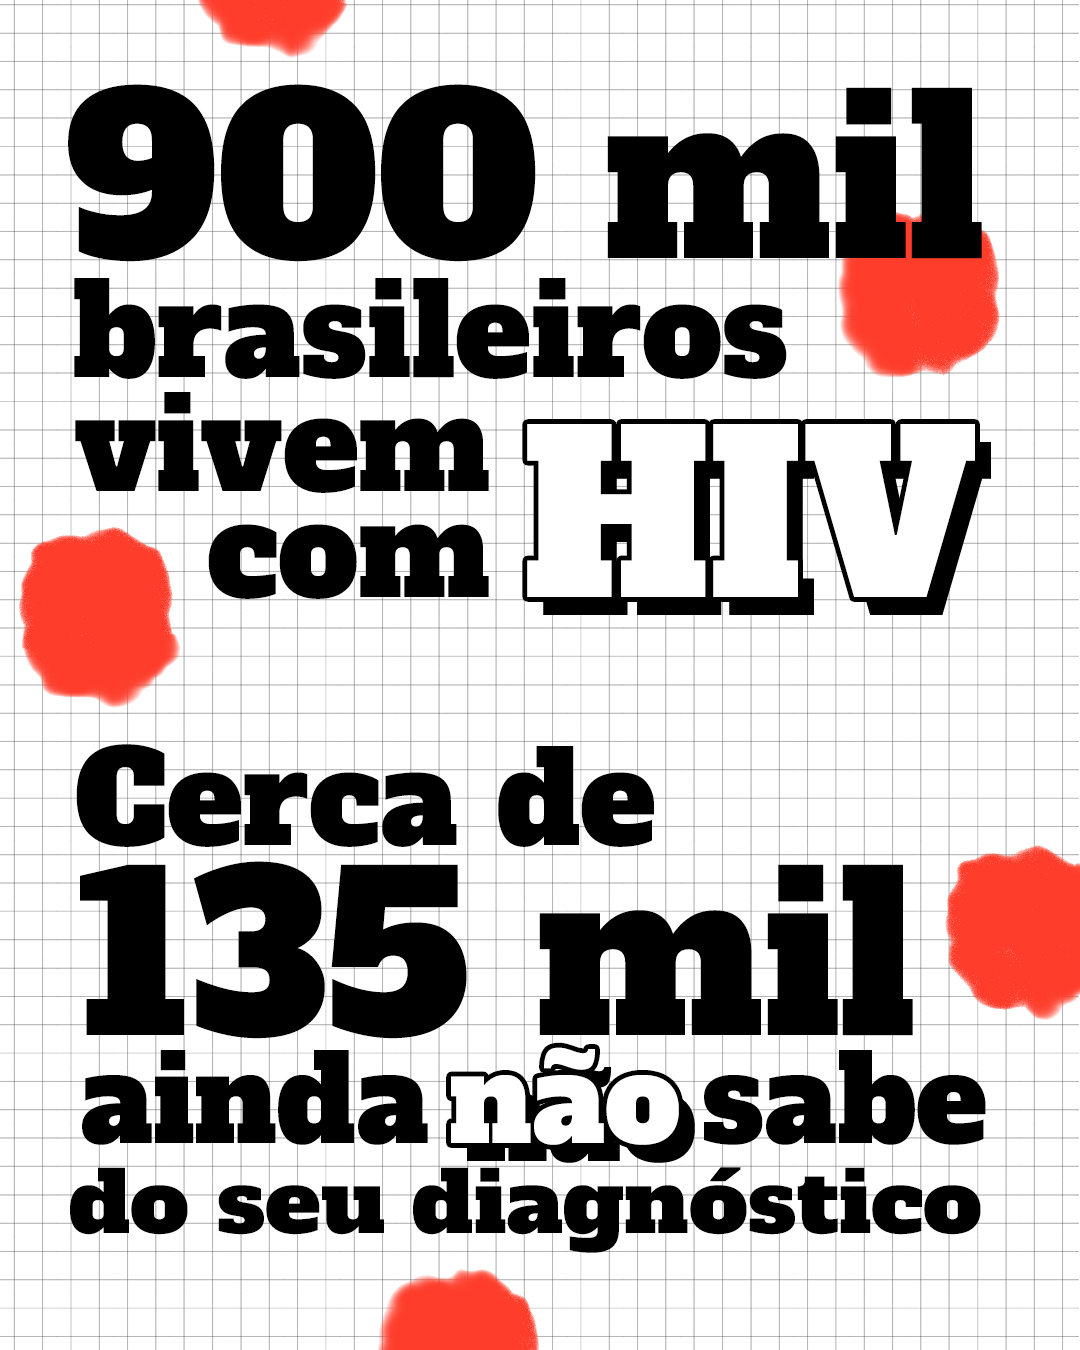 Dados HIV - Imagem com os dados: 900 mil brasileiros vivem com HIV. Cerca de 135 mil ainda não sabe do seu diagnóstico.